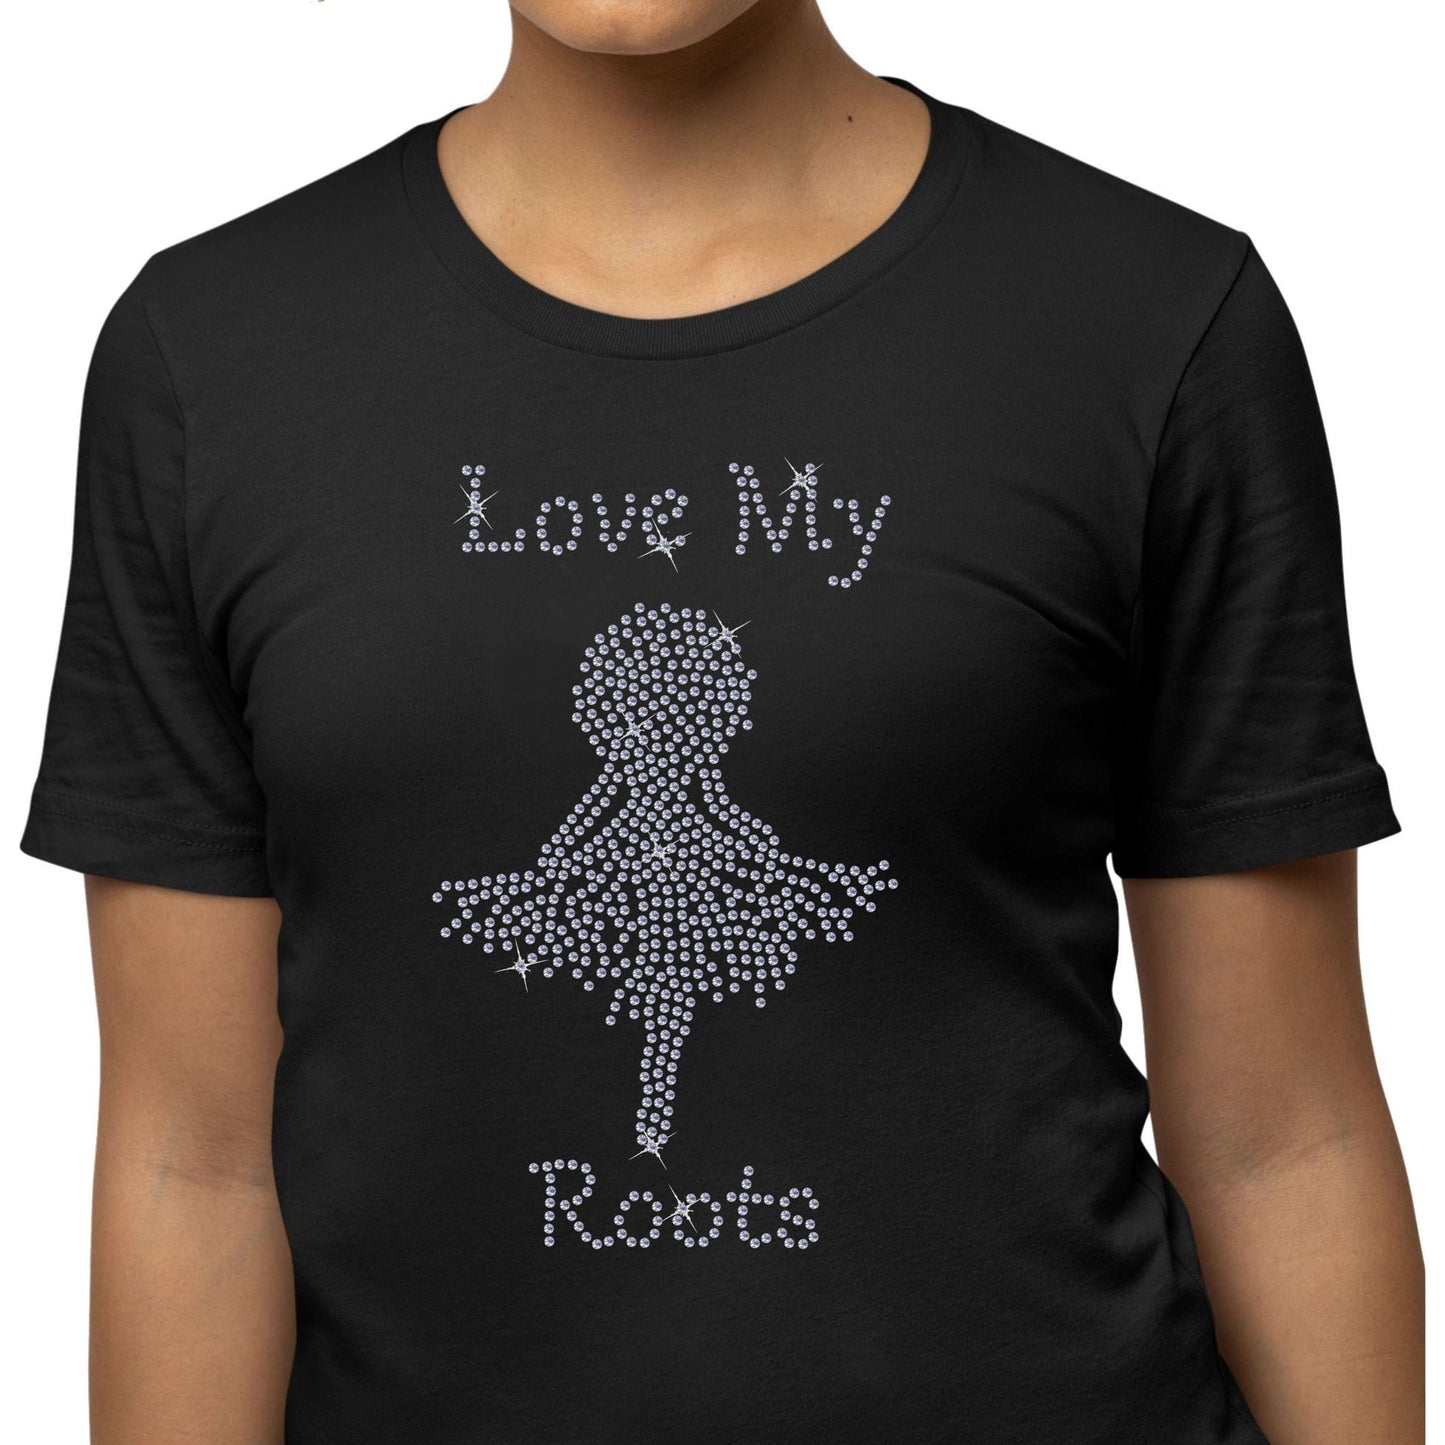 Love My roots Black Crew Neck Tee